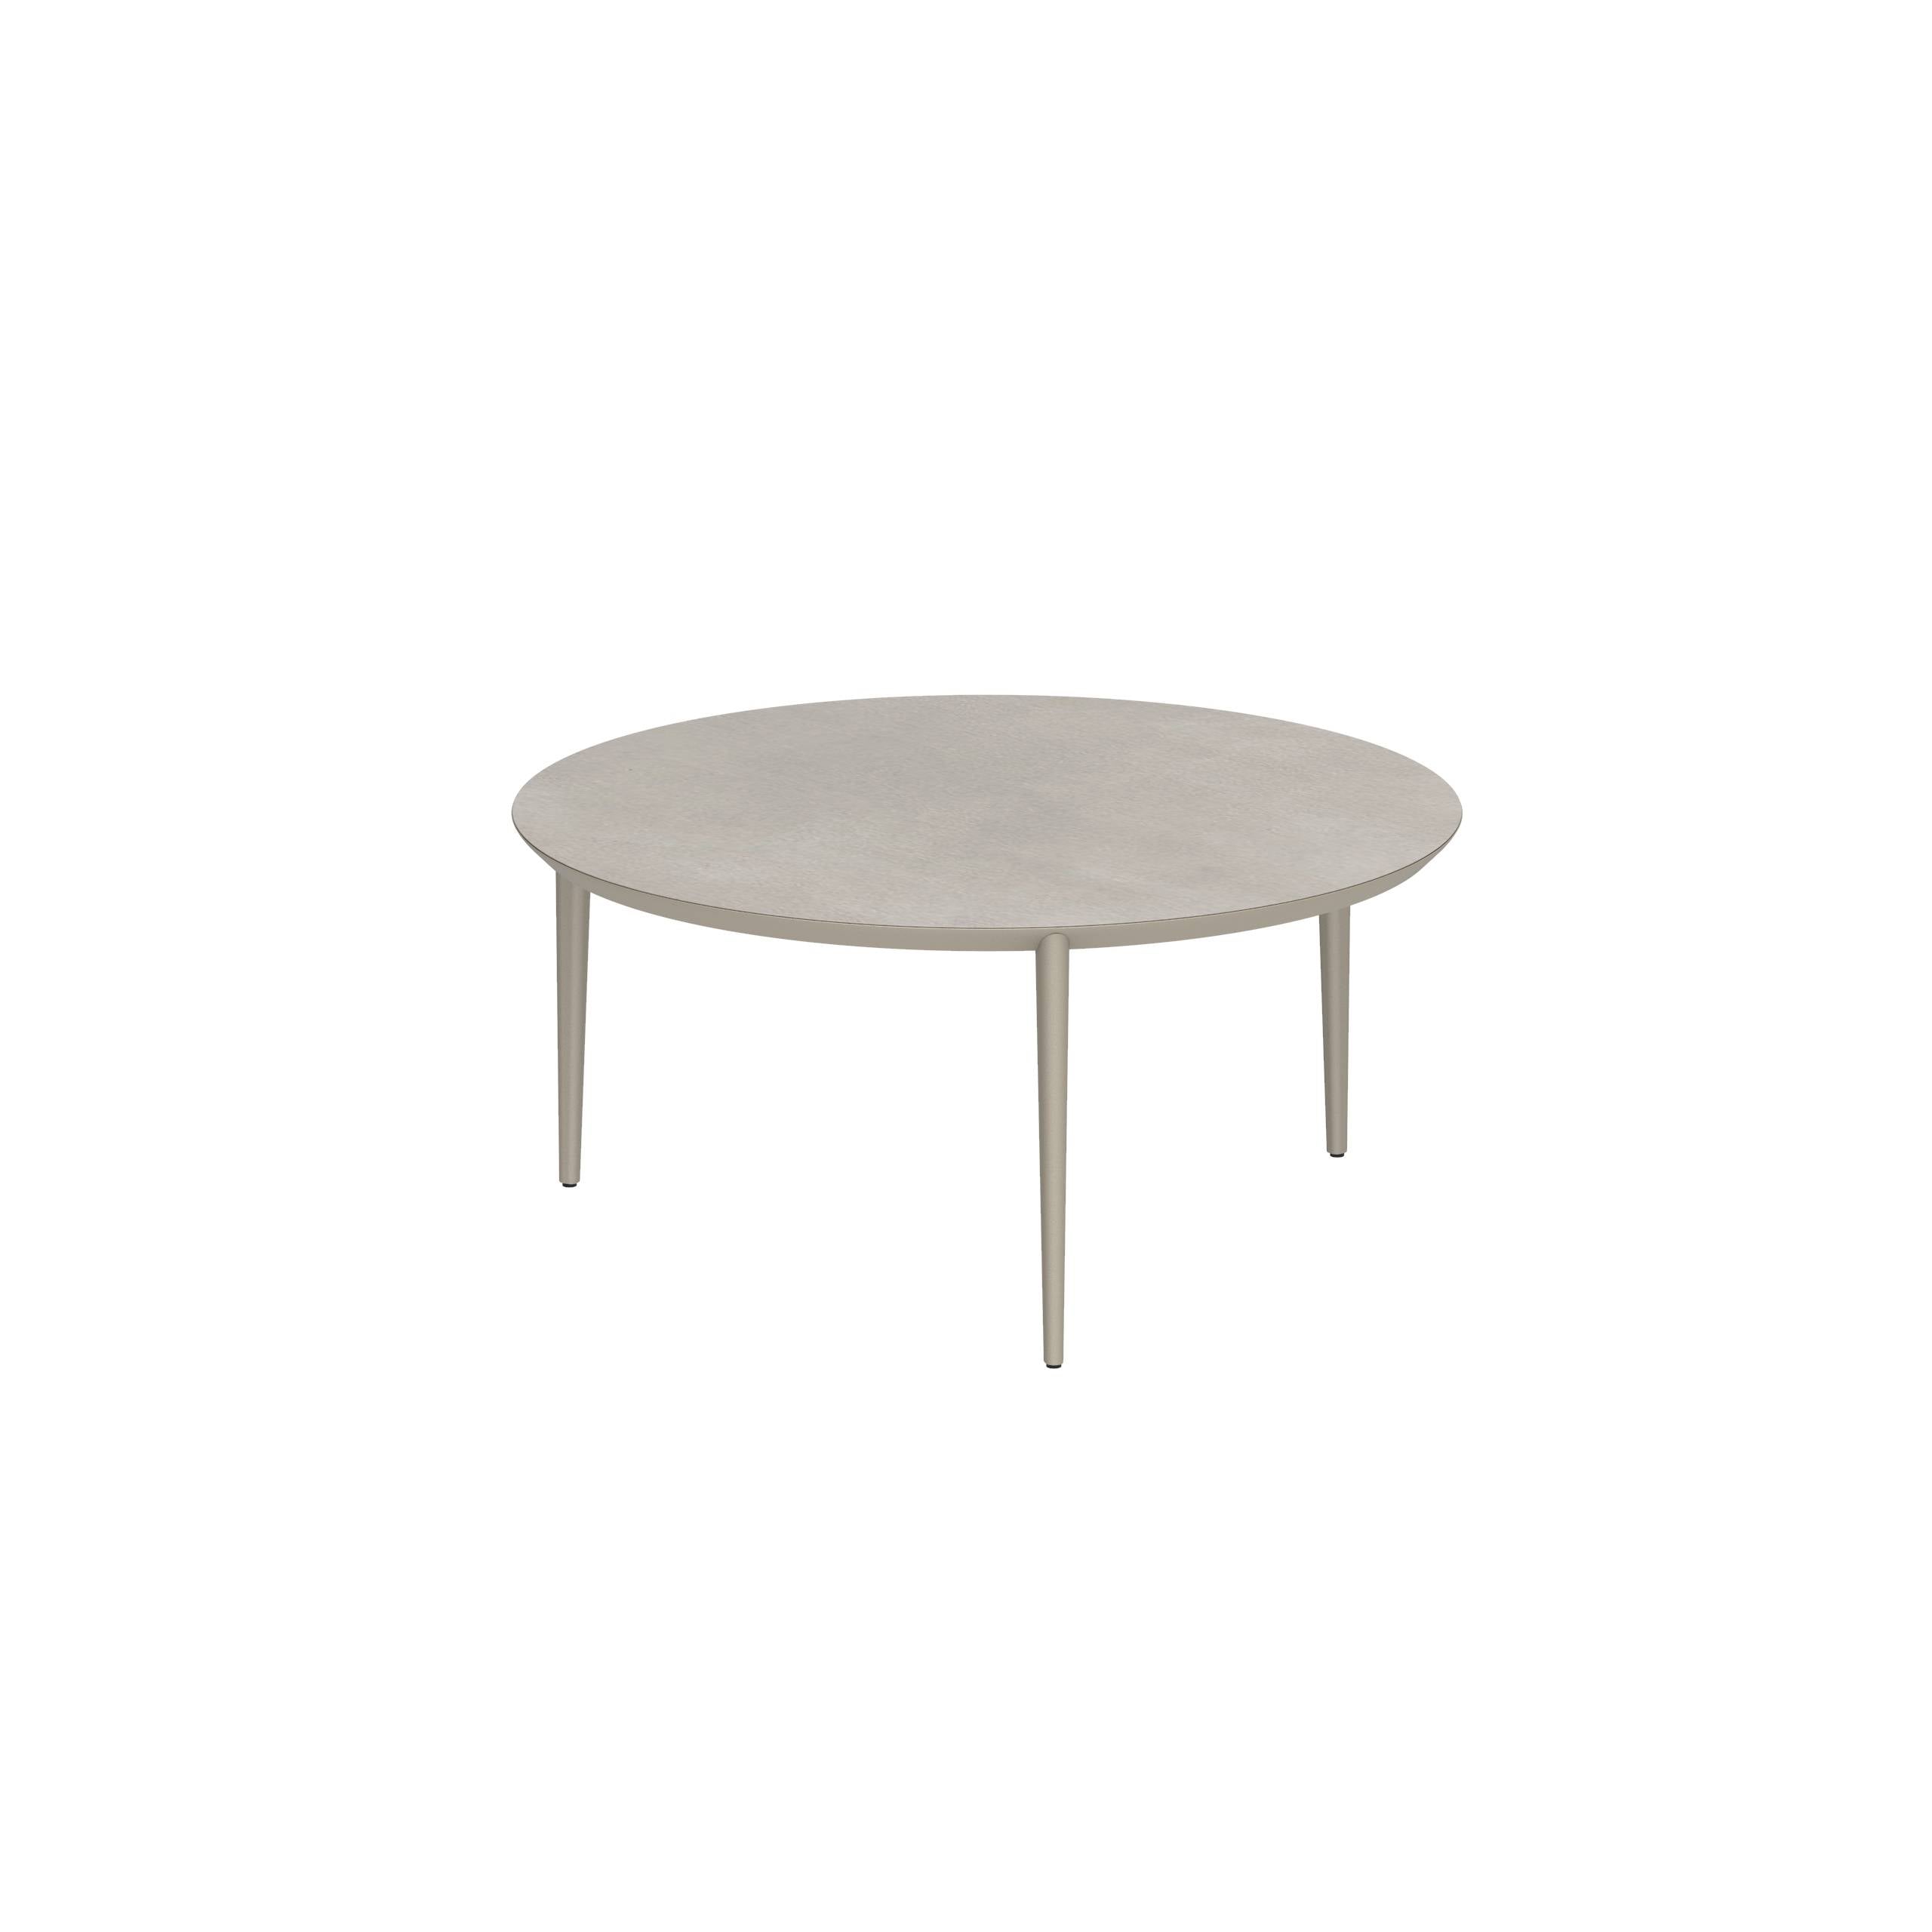 U-Nite Table Round Ø 160cm Alu Legs Sand - Table Top Ceramic Cemento Luminoso